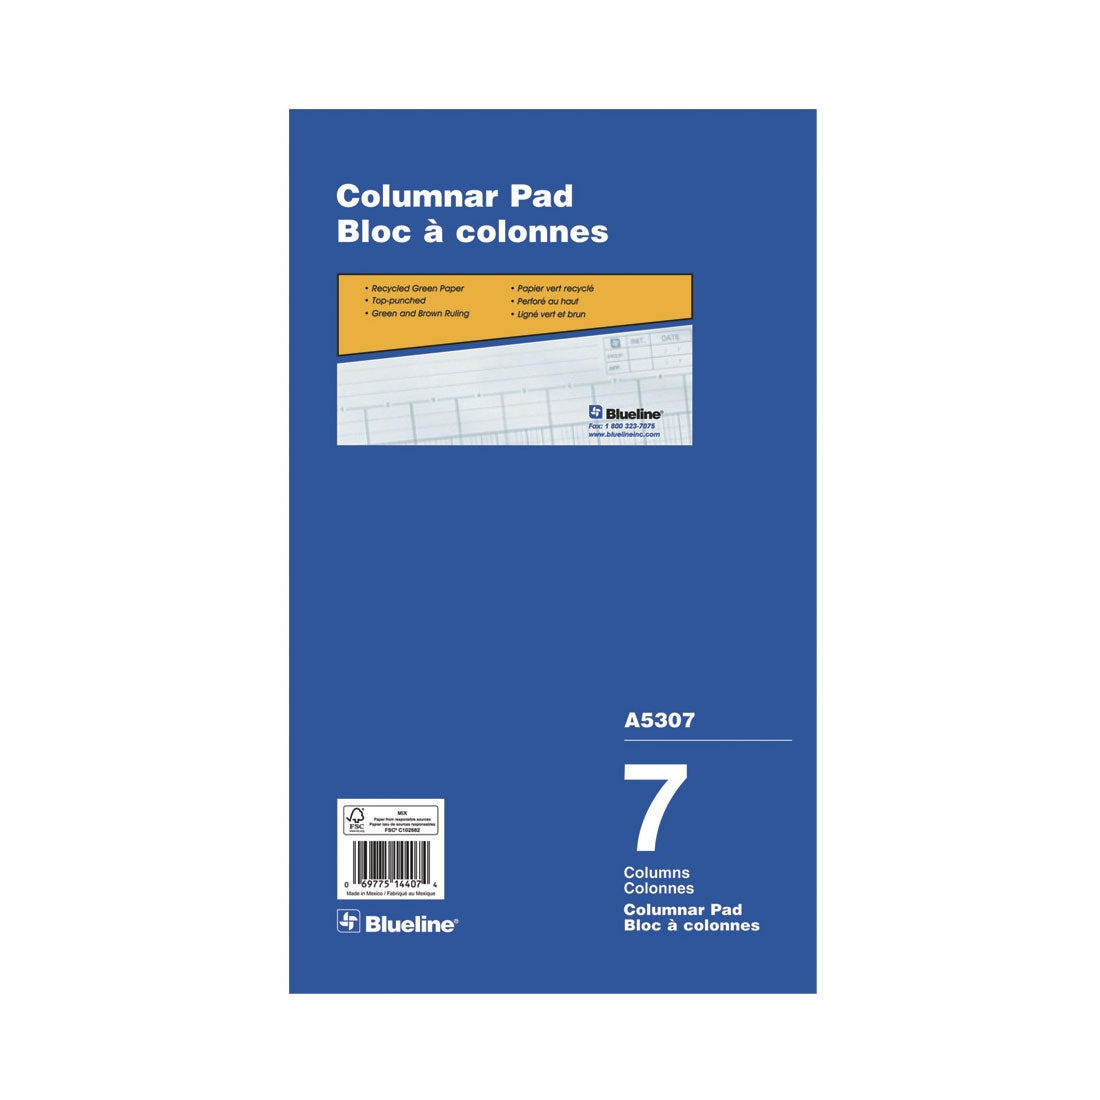 Columnar Pad - 7 Columns, A5307